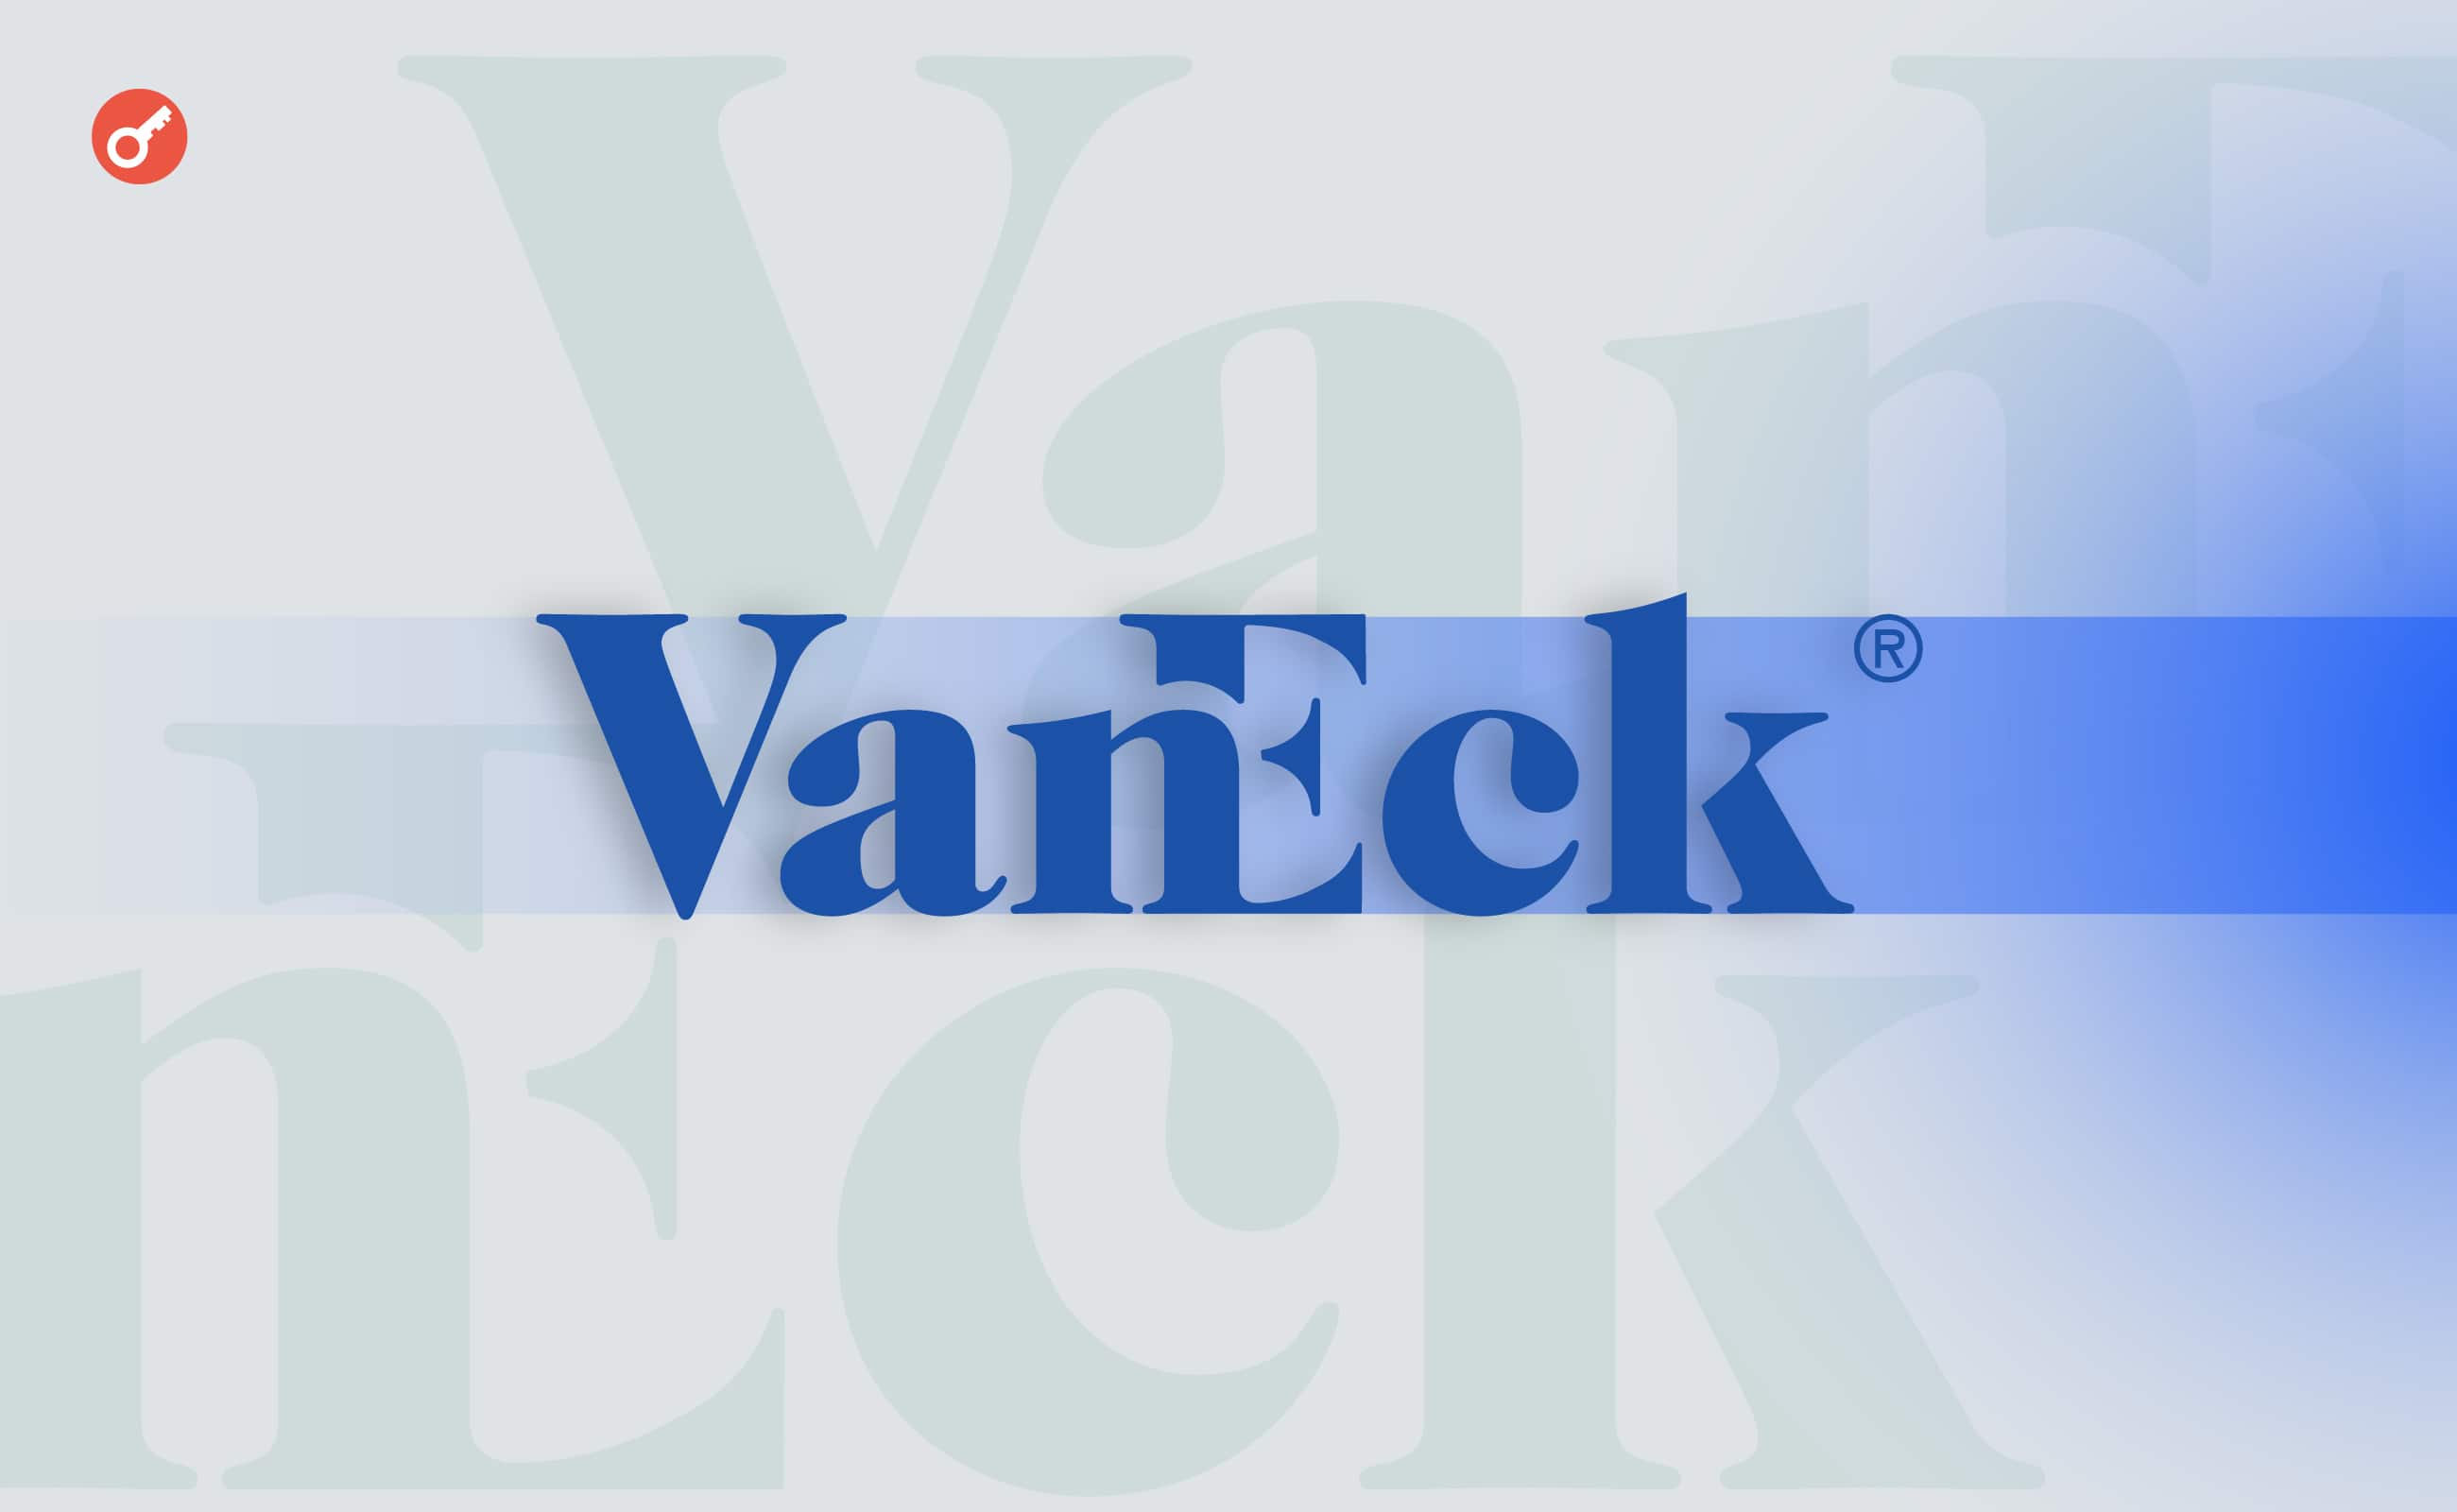 VanEck знизила комісію у своєму спотовому біткоїн-ETF до нуля. Головний колаж новини.